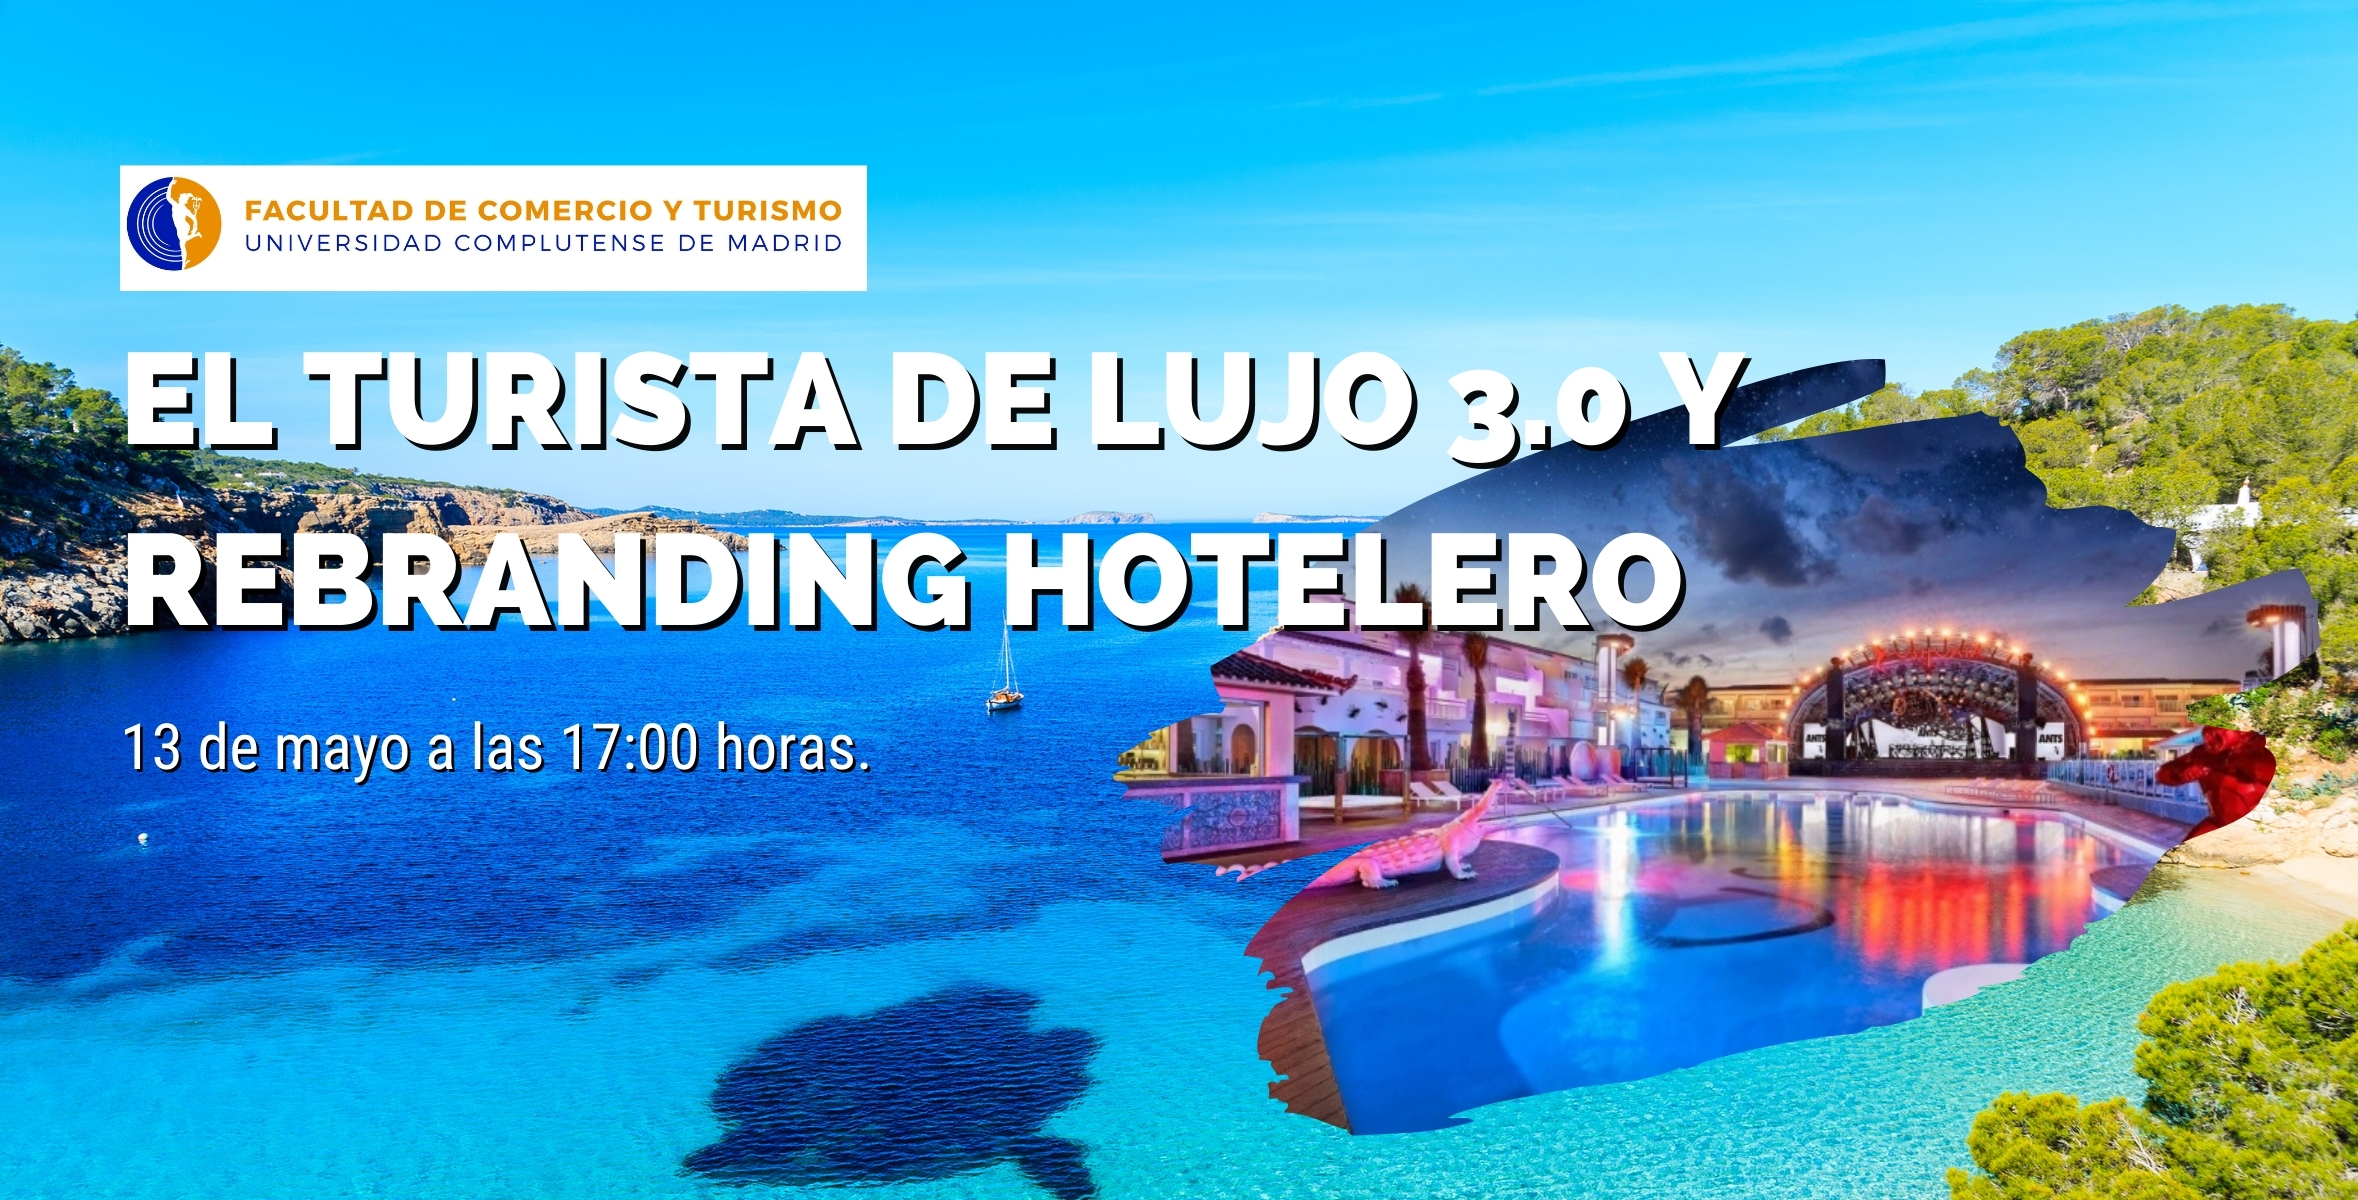 SEMINARIO: El turista de lujo 3.0 y rebranding hotelero